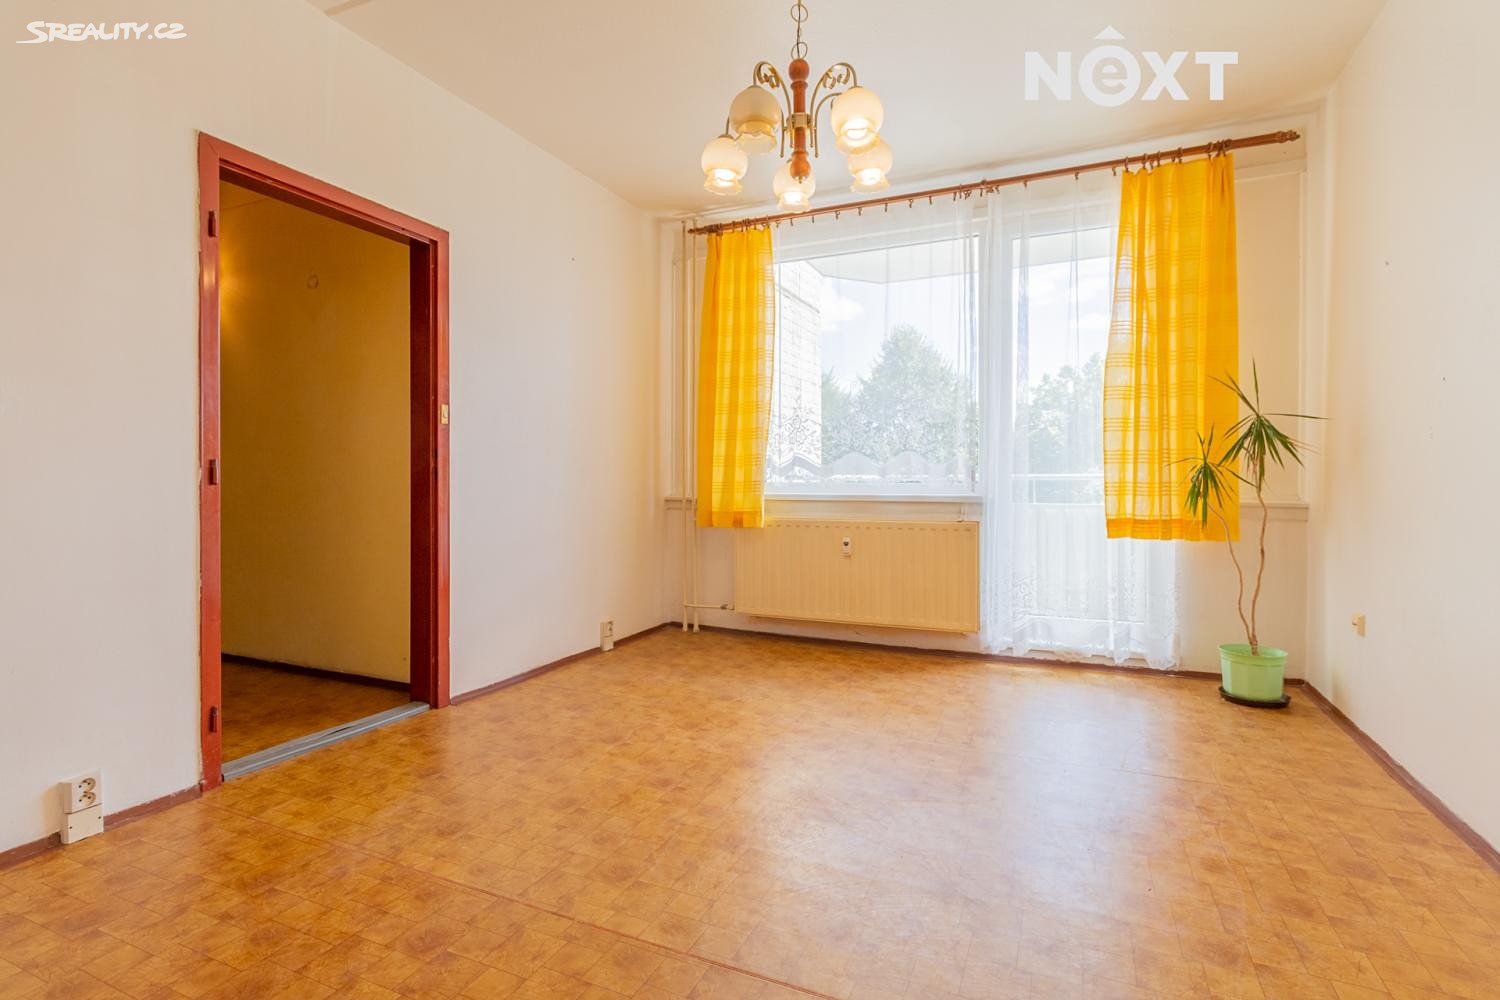 Prodej bytu 2+kk 42 m², Všemyslice - Neznašov, okres České Budějovice